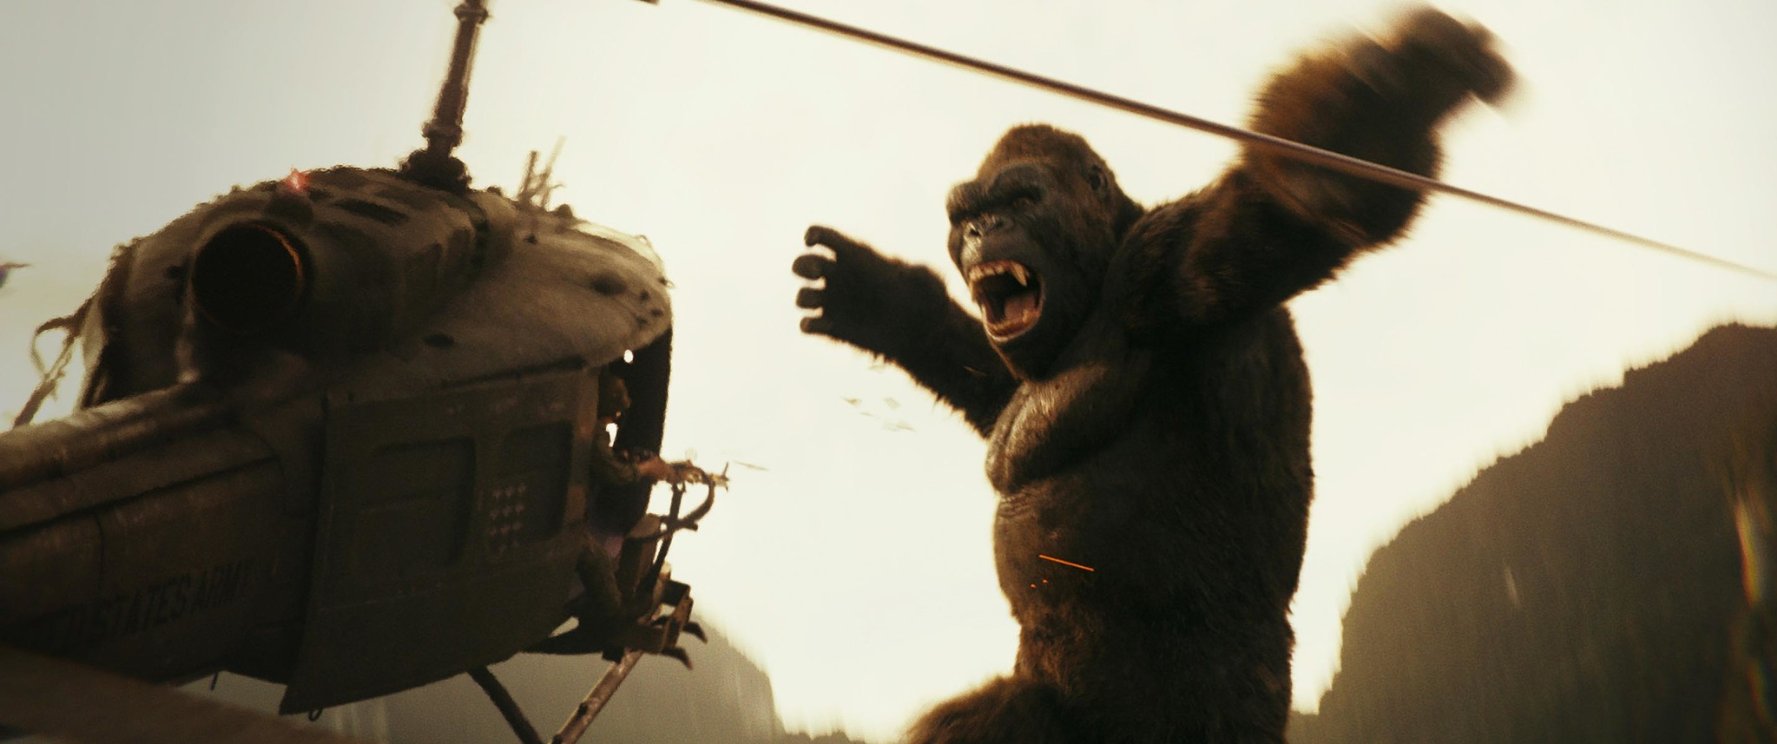 'Kong: Skull Island' Review